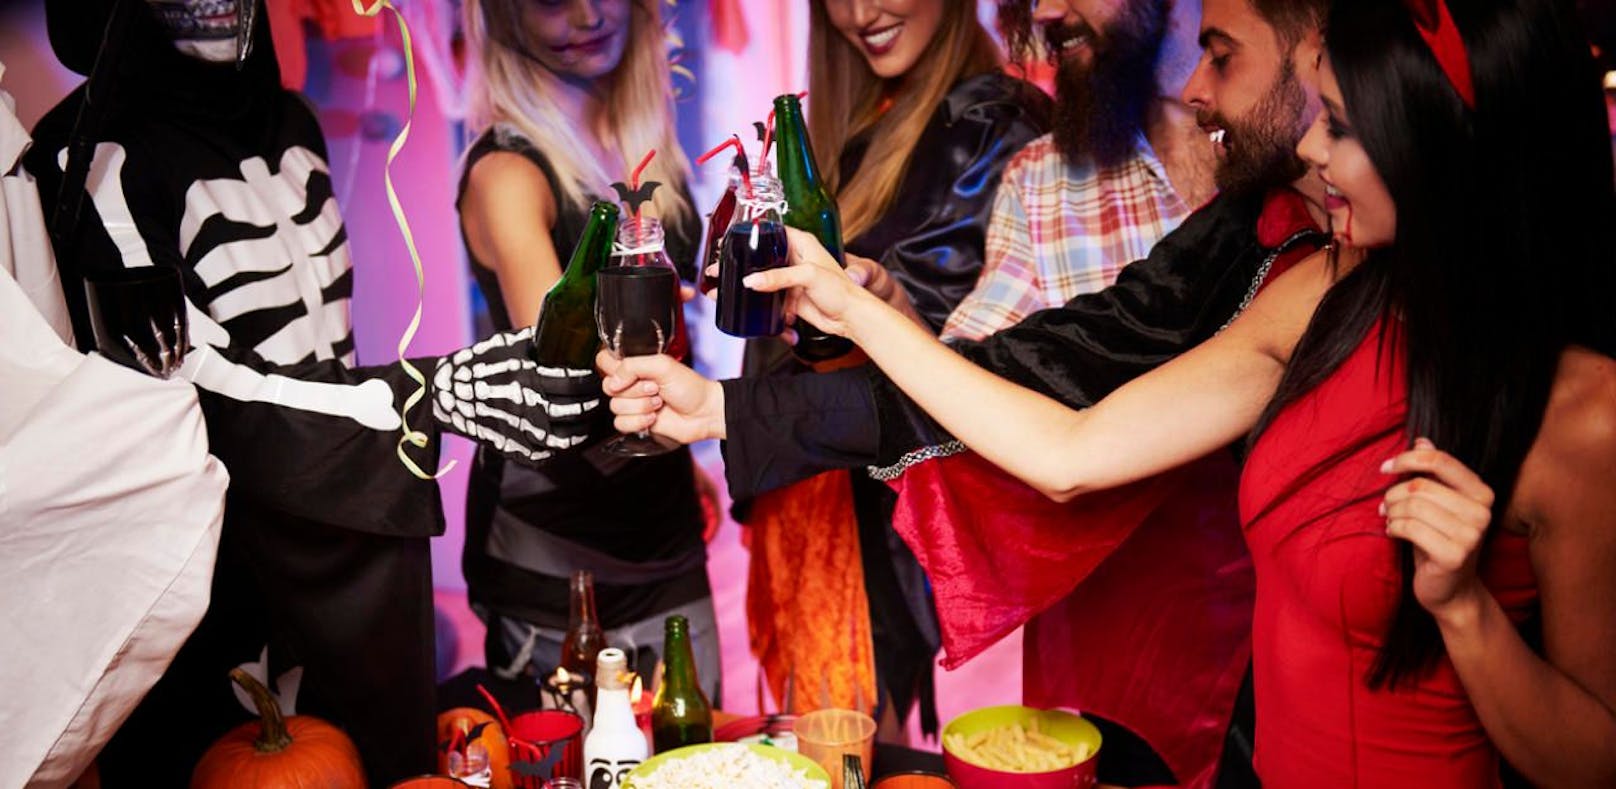 Halloween - eine Nacht für ausgelassene Parties und kreative Verkleidungen (Symbolbild).